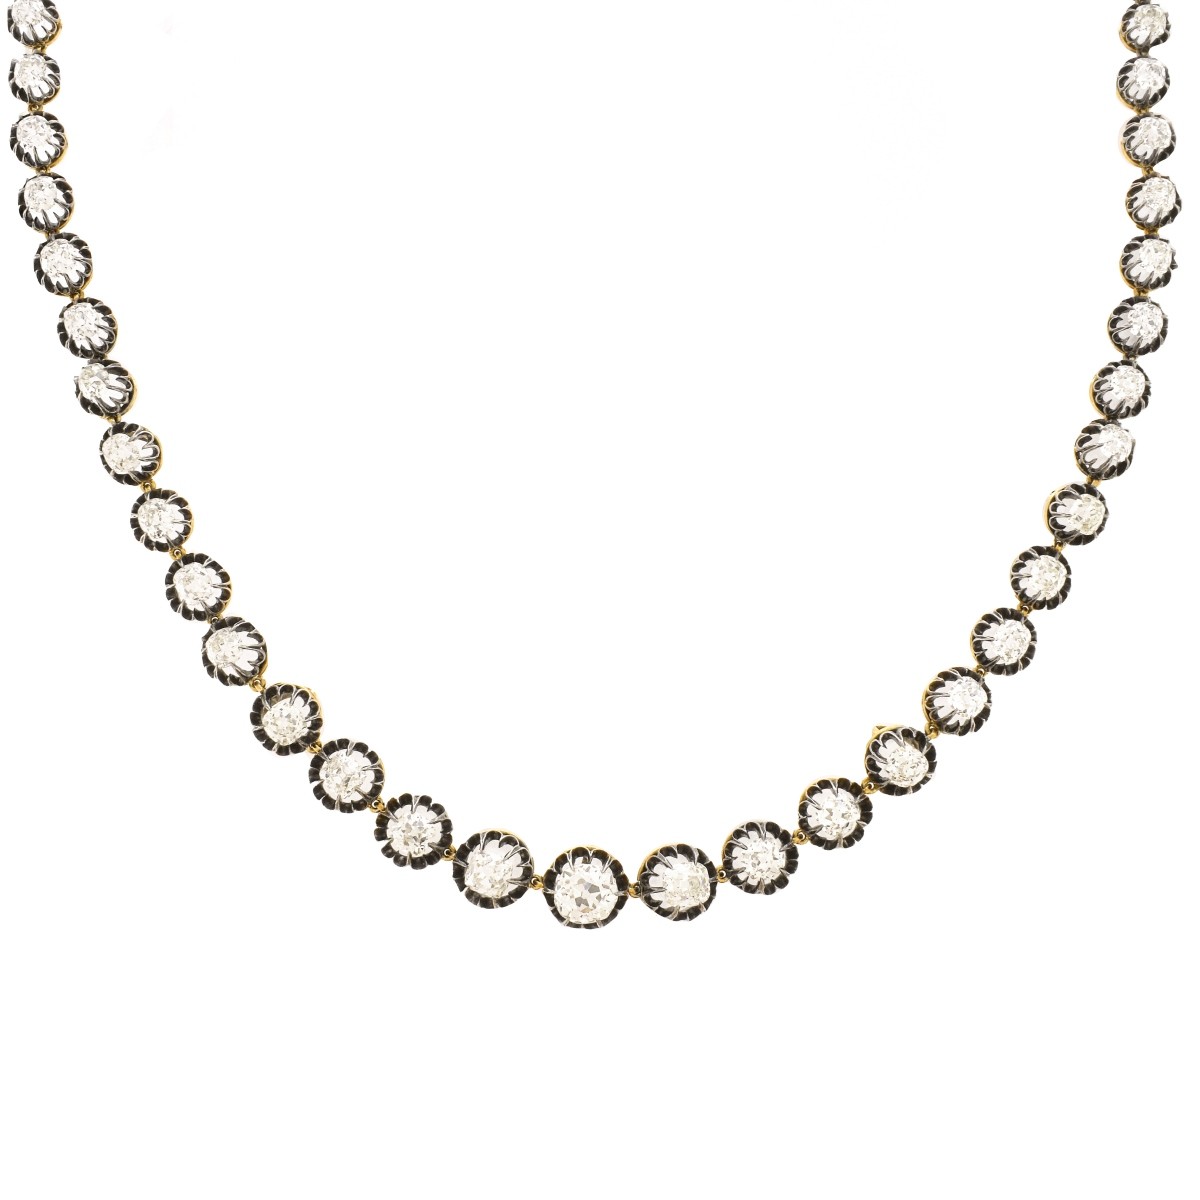 Victorian 40.50 Carat Diamond Necklace